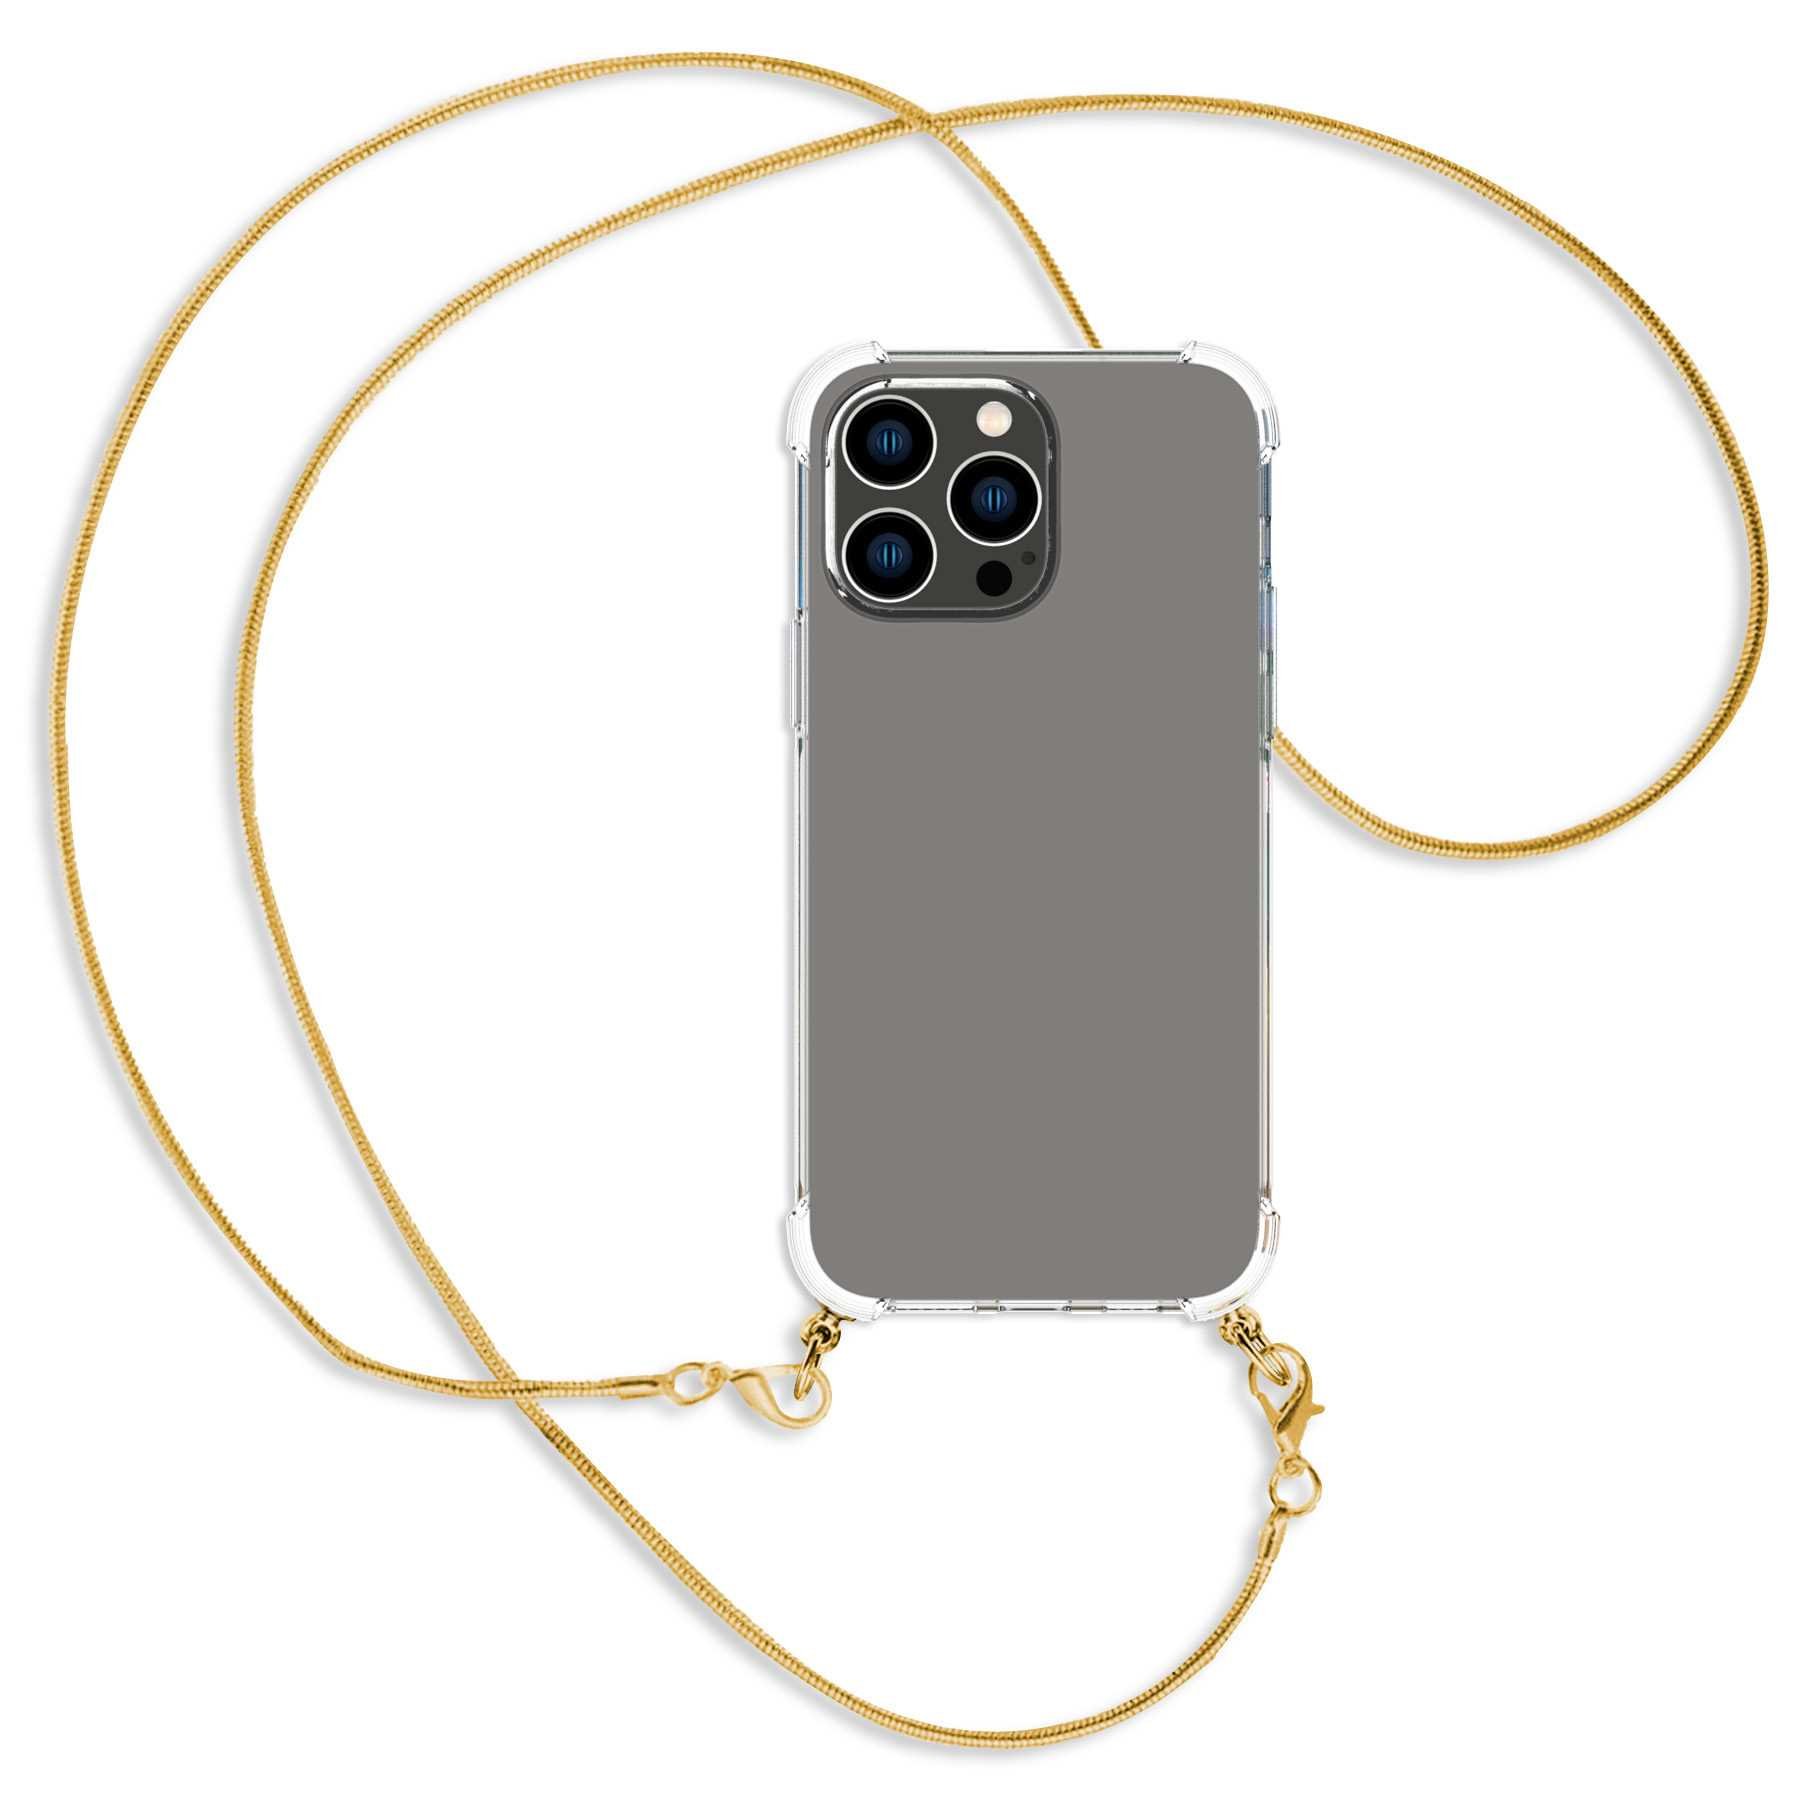 MTB MORE ENERGY 14 mit Max, Snake Apple, Pro Backcover, (gold) Kette Umhänge-Hülle Metallkette, iPhone